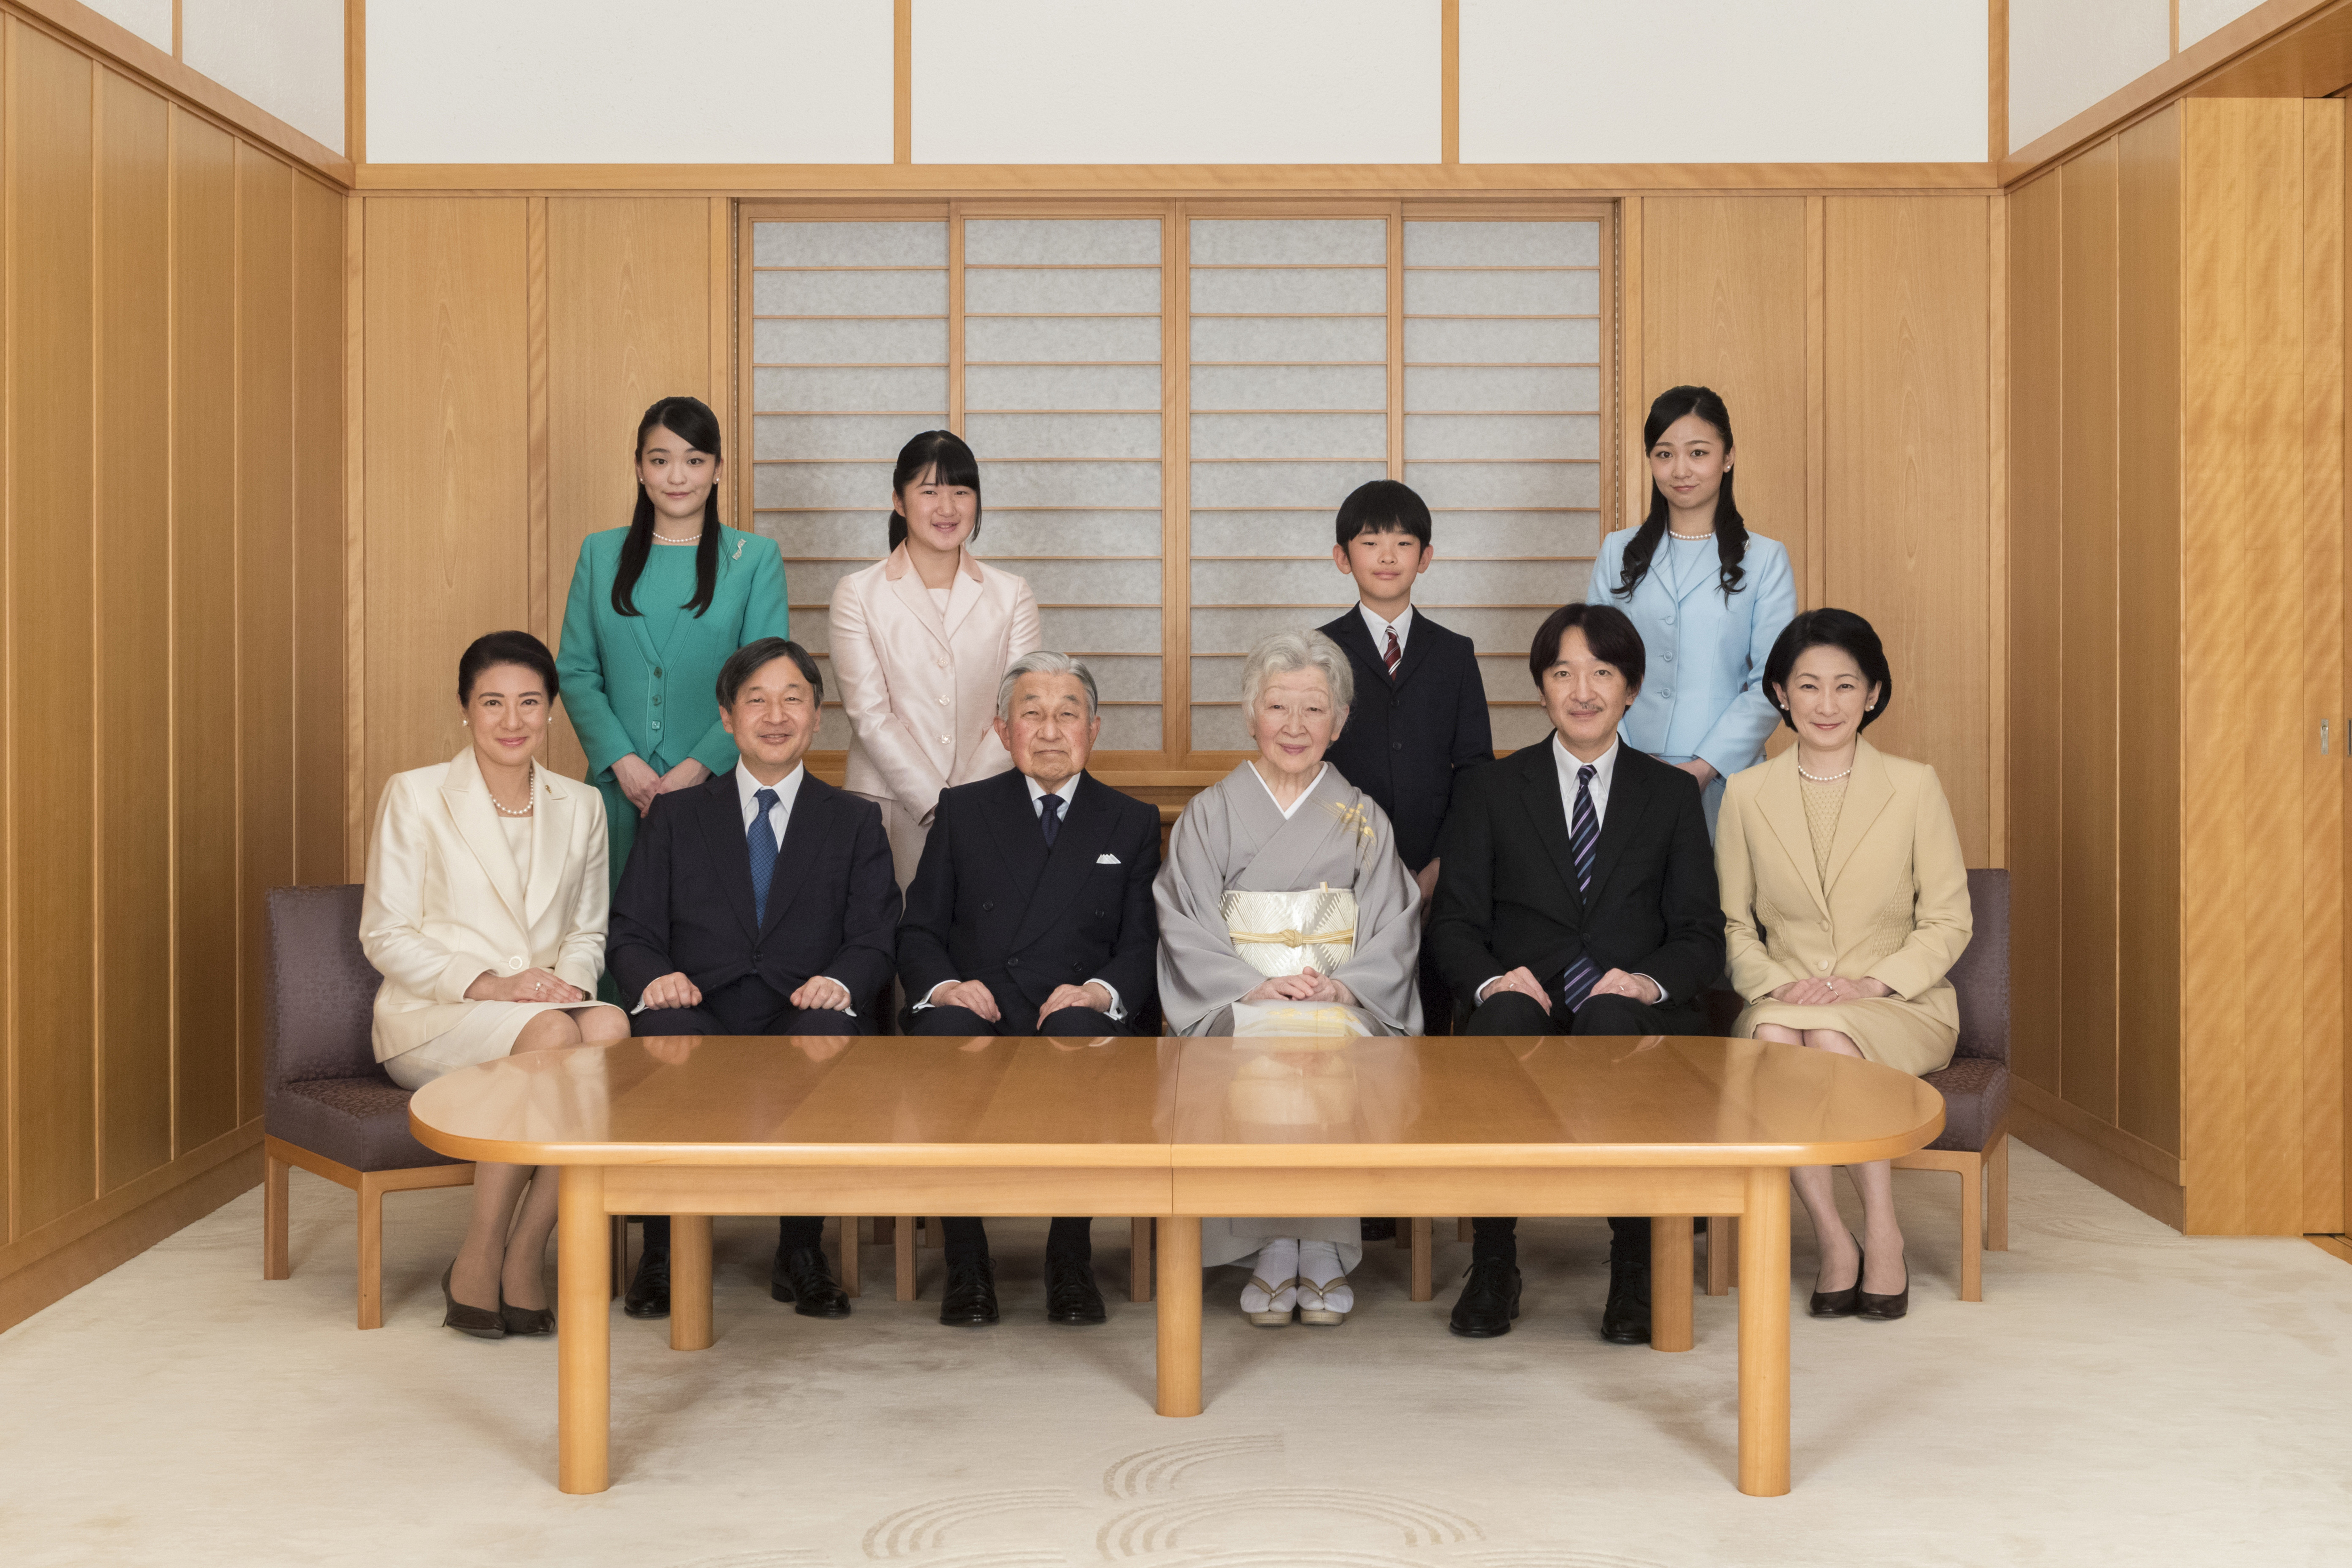 Japanische Kaiserfamilie